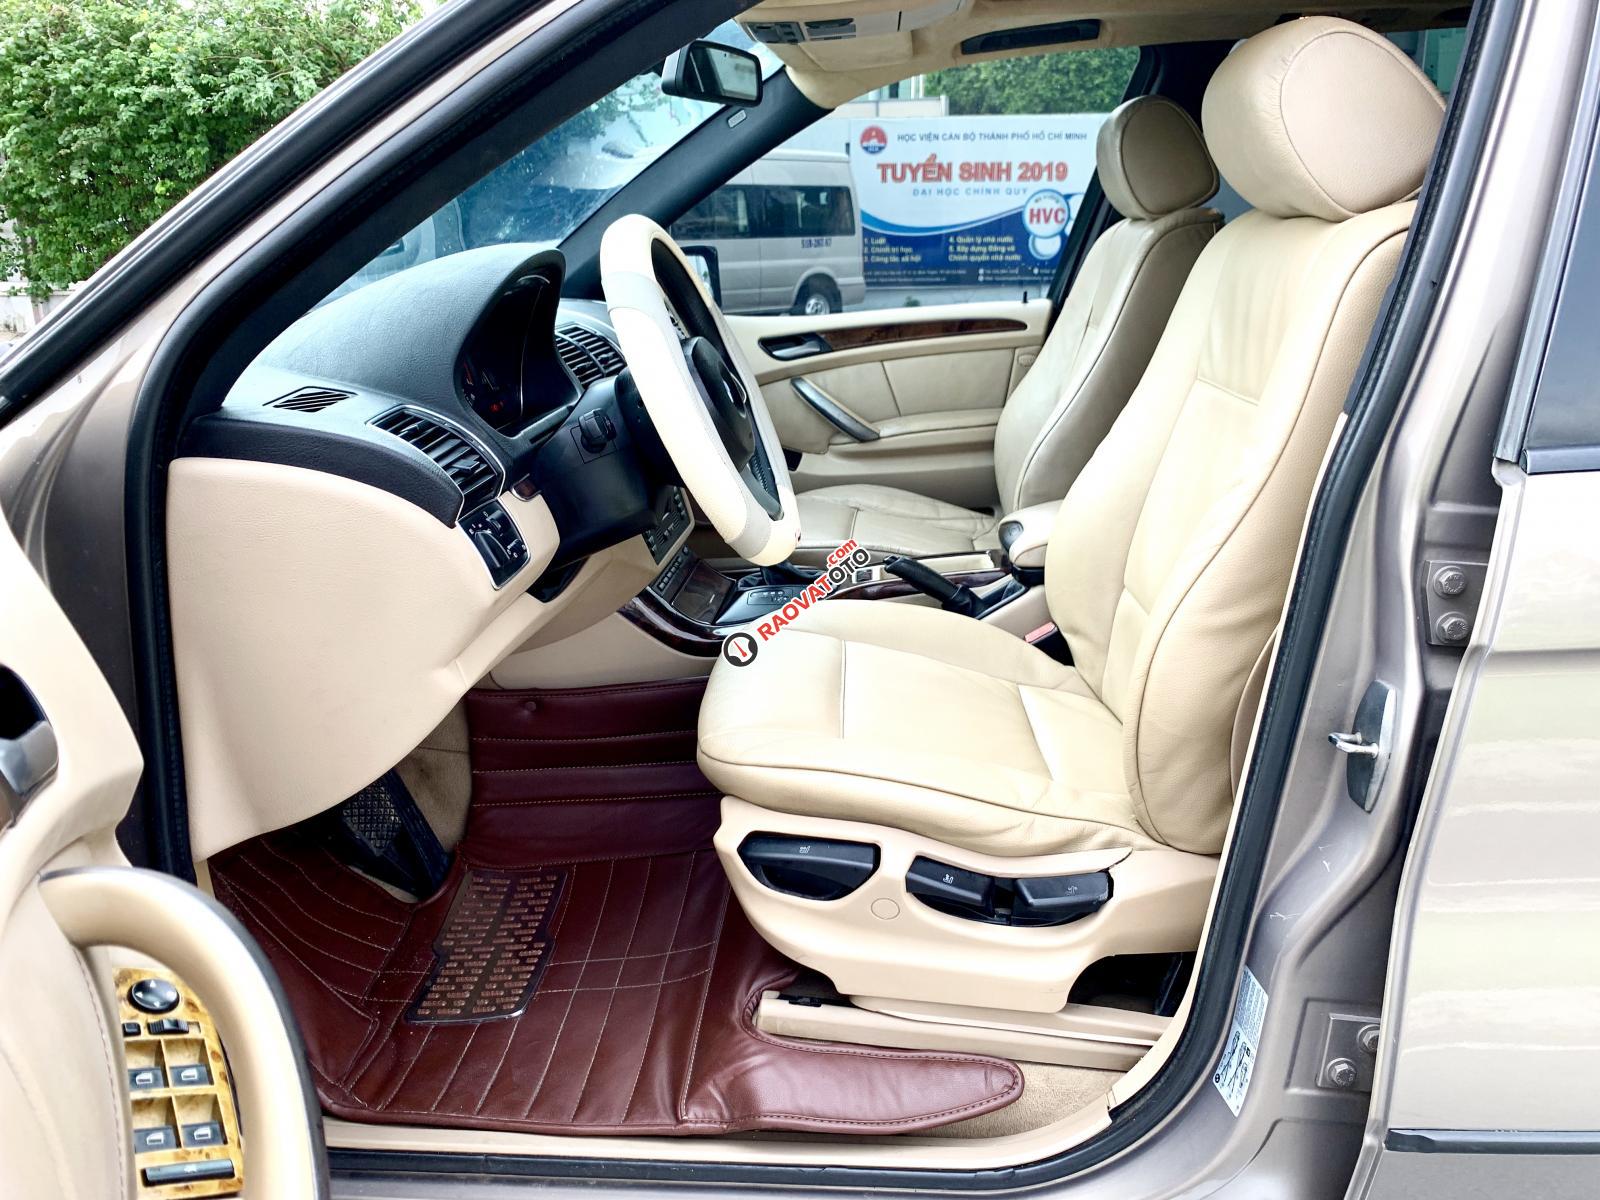 Bán BMW X5 diesel 2006 dầu 5 chỗ, hàng full cao cấp vào đủ đồ, hai cầu, số tự động-5